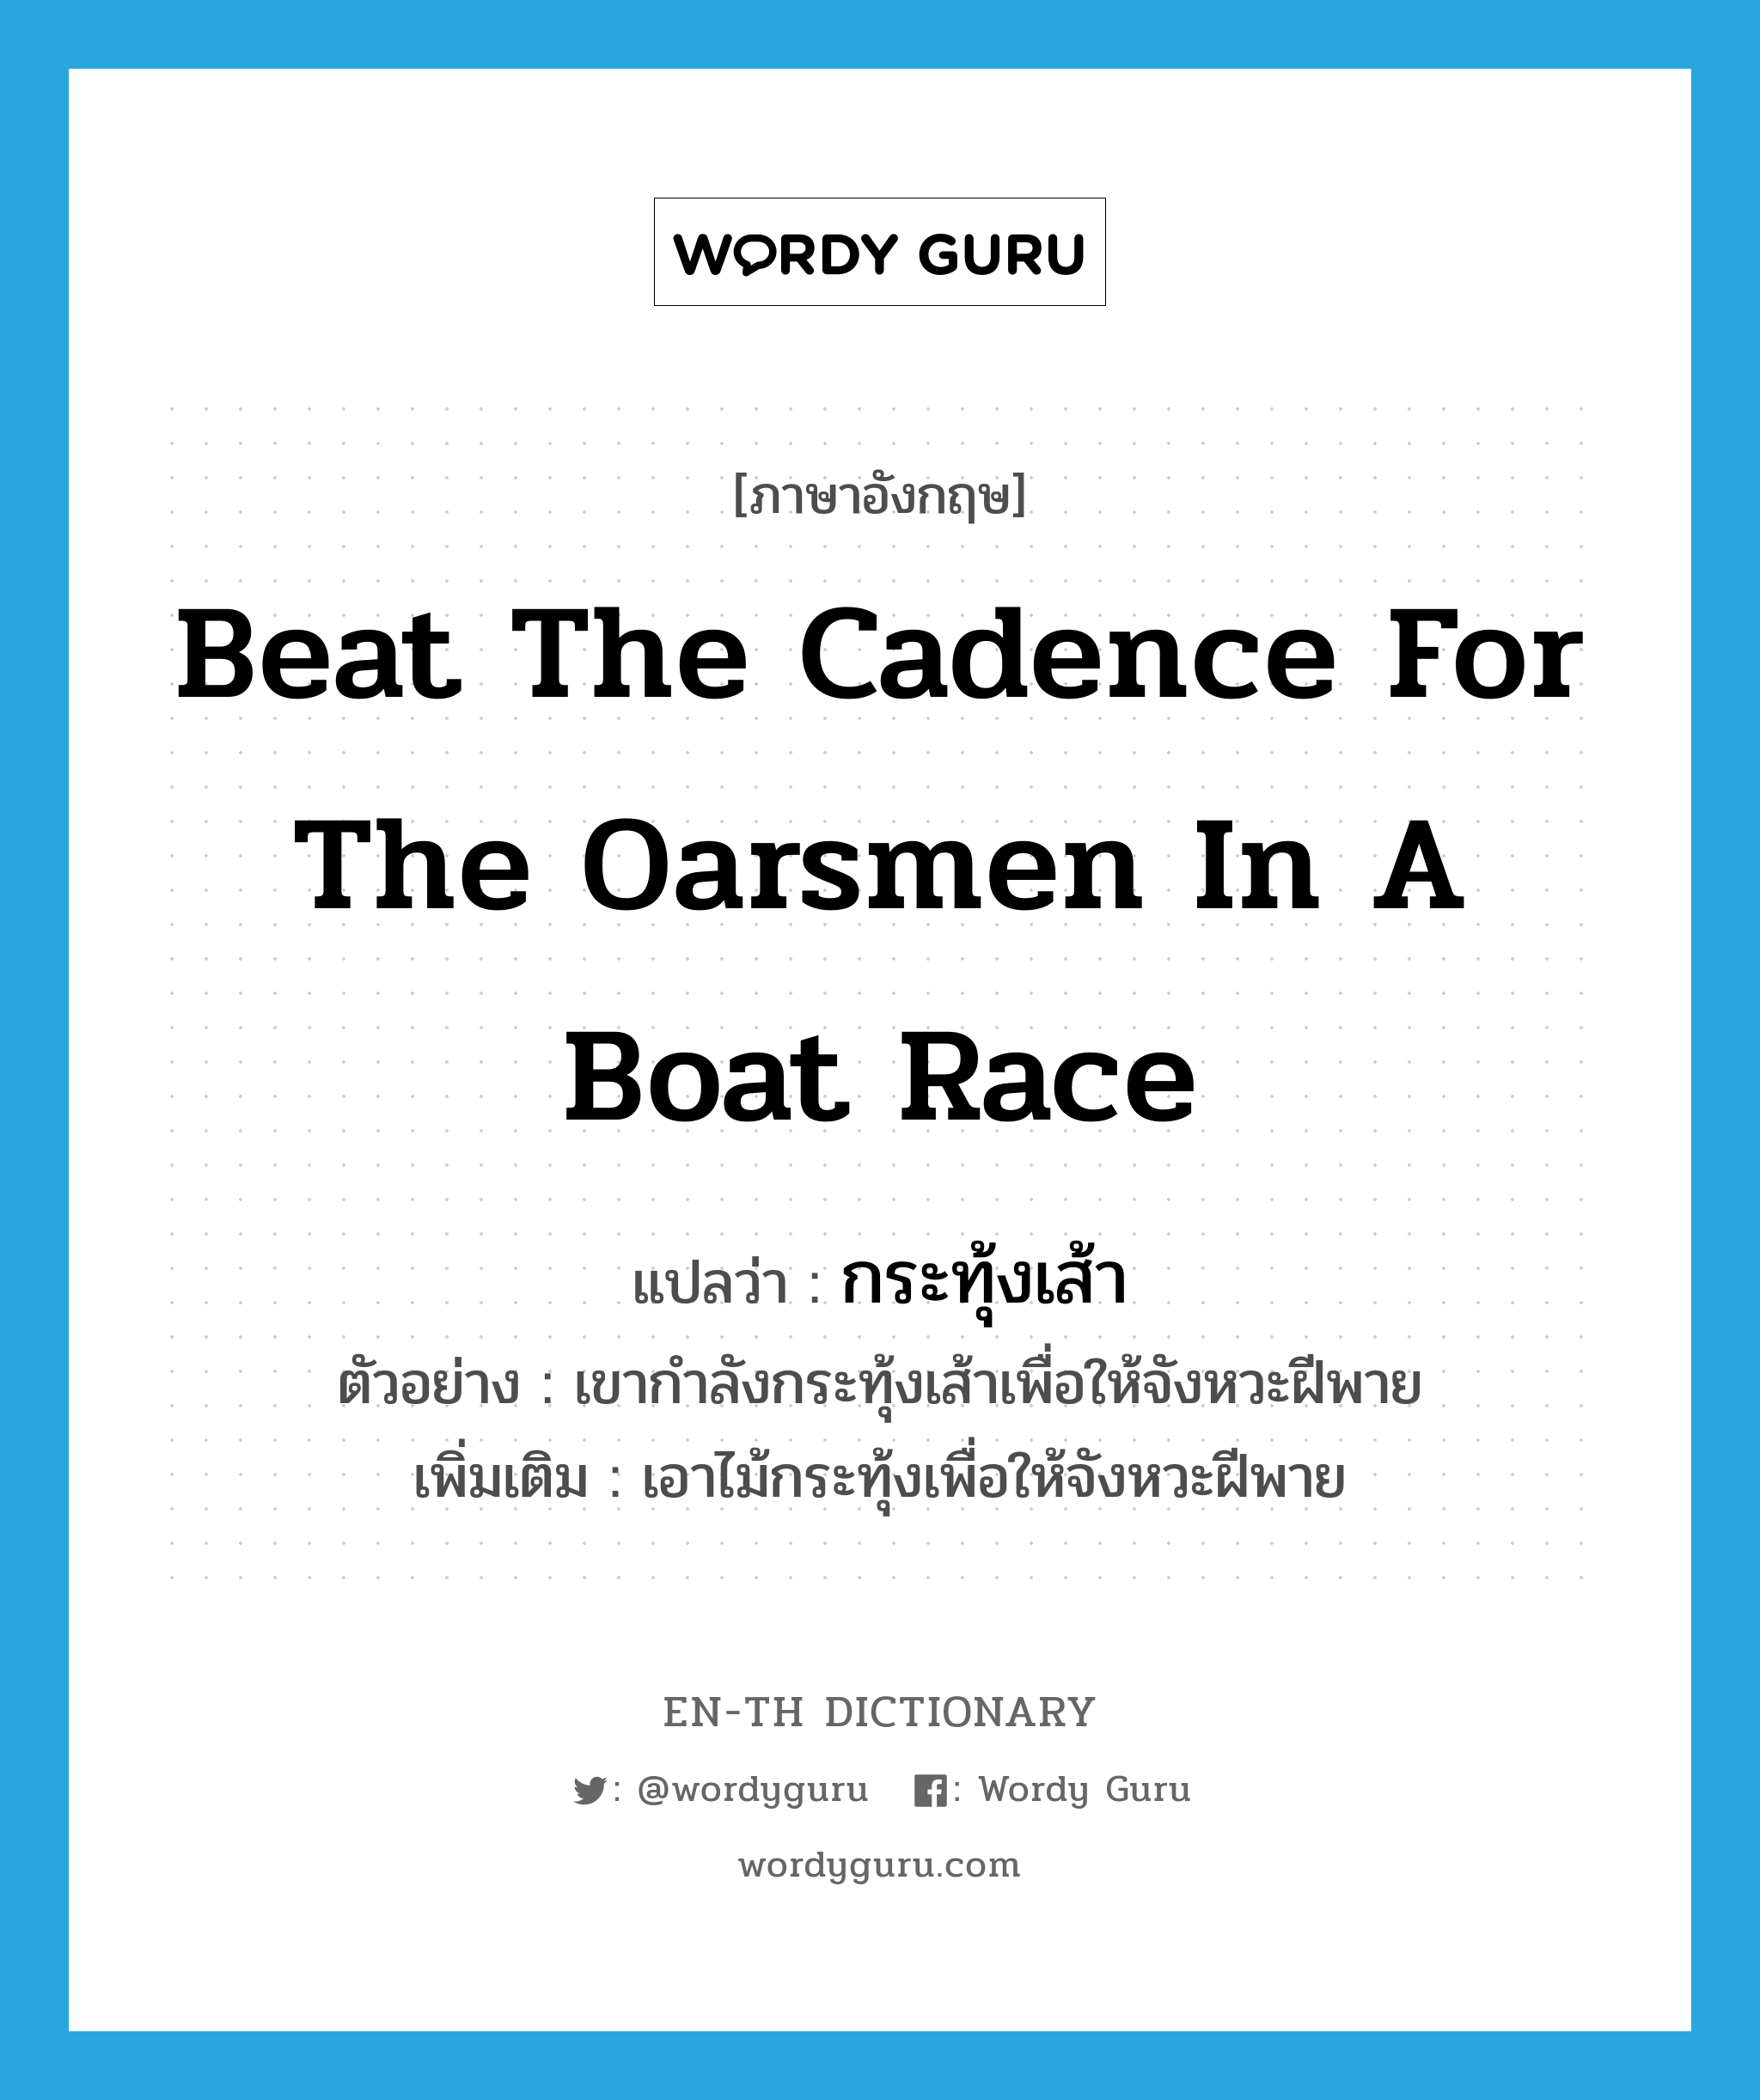 กระทุ้งเส้า ภาษาอังกฤษ?, คำศัพท์ภาษาอังกฤษ กระทุ้งเส้า แปลว่า beat the cadence for the oarsmen in a boat race ประเภท V ตัวอย่าง เขากำลังกระทุ้งเส้าเพื่อให้จังหวะฝีพาย เพิ่มเติม เอาไม้กระทุ้งเพื่อให้จังหวะฝีพาย หมวด V